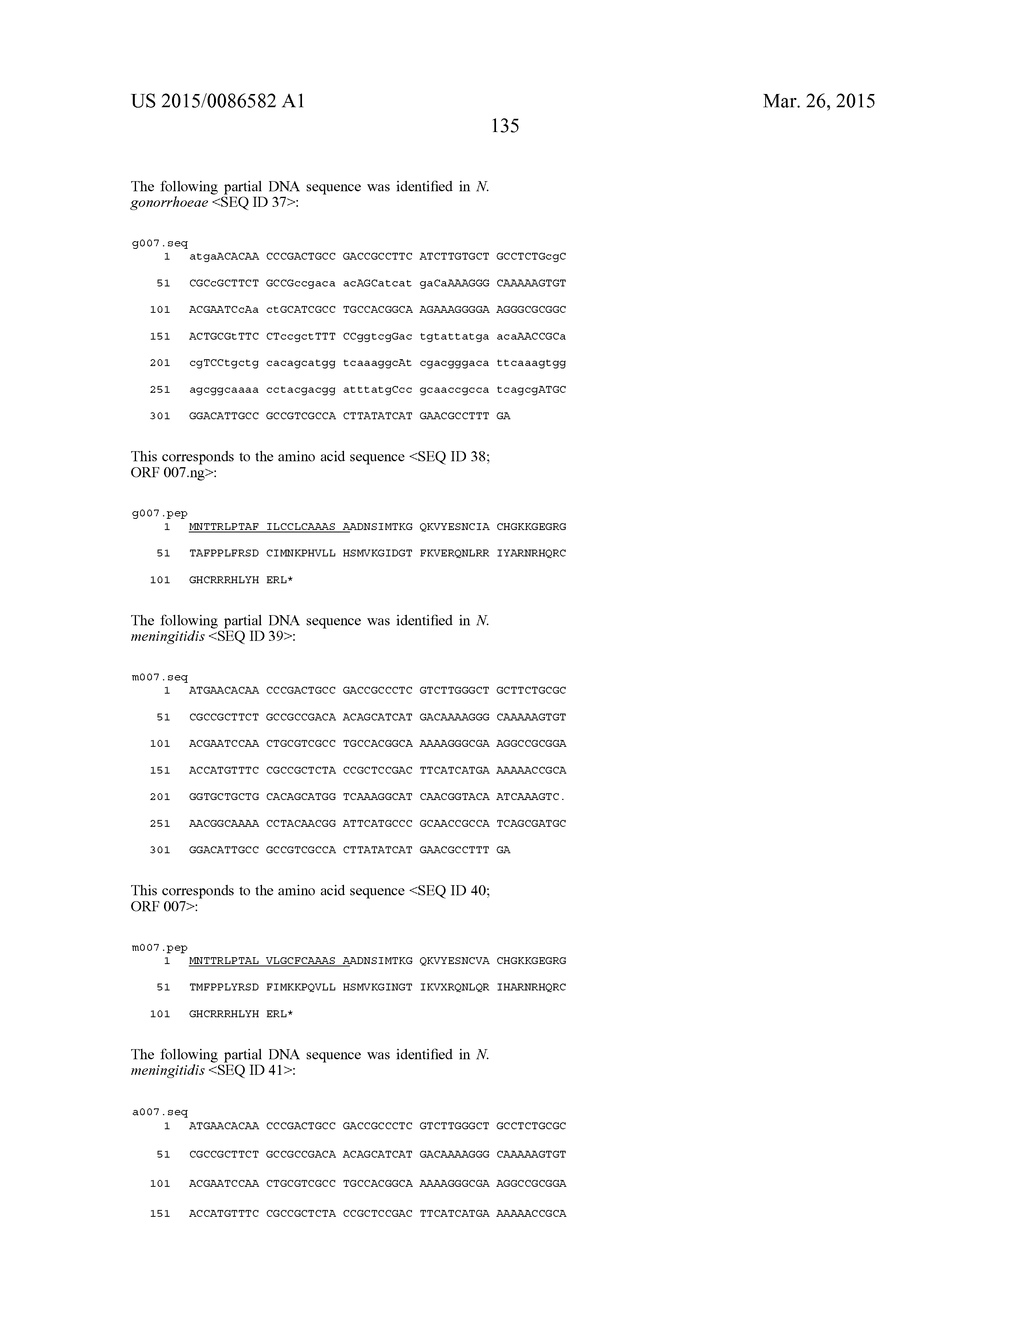 NEISSERIA MENINGITIDIS ANTIGENS AND COMPOSITIONS - diagram, schematic, and image 167